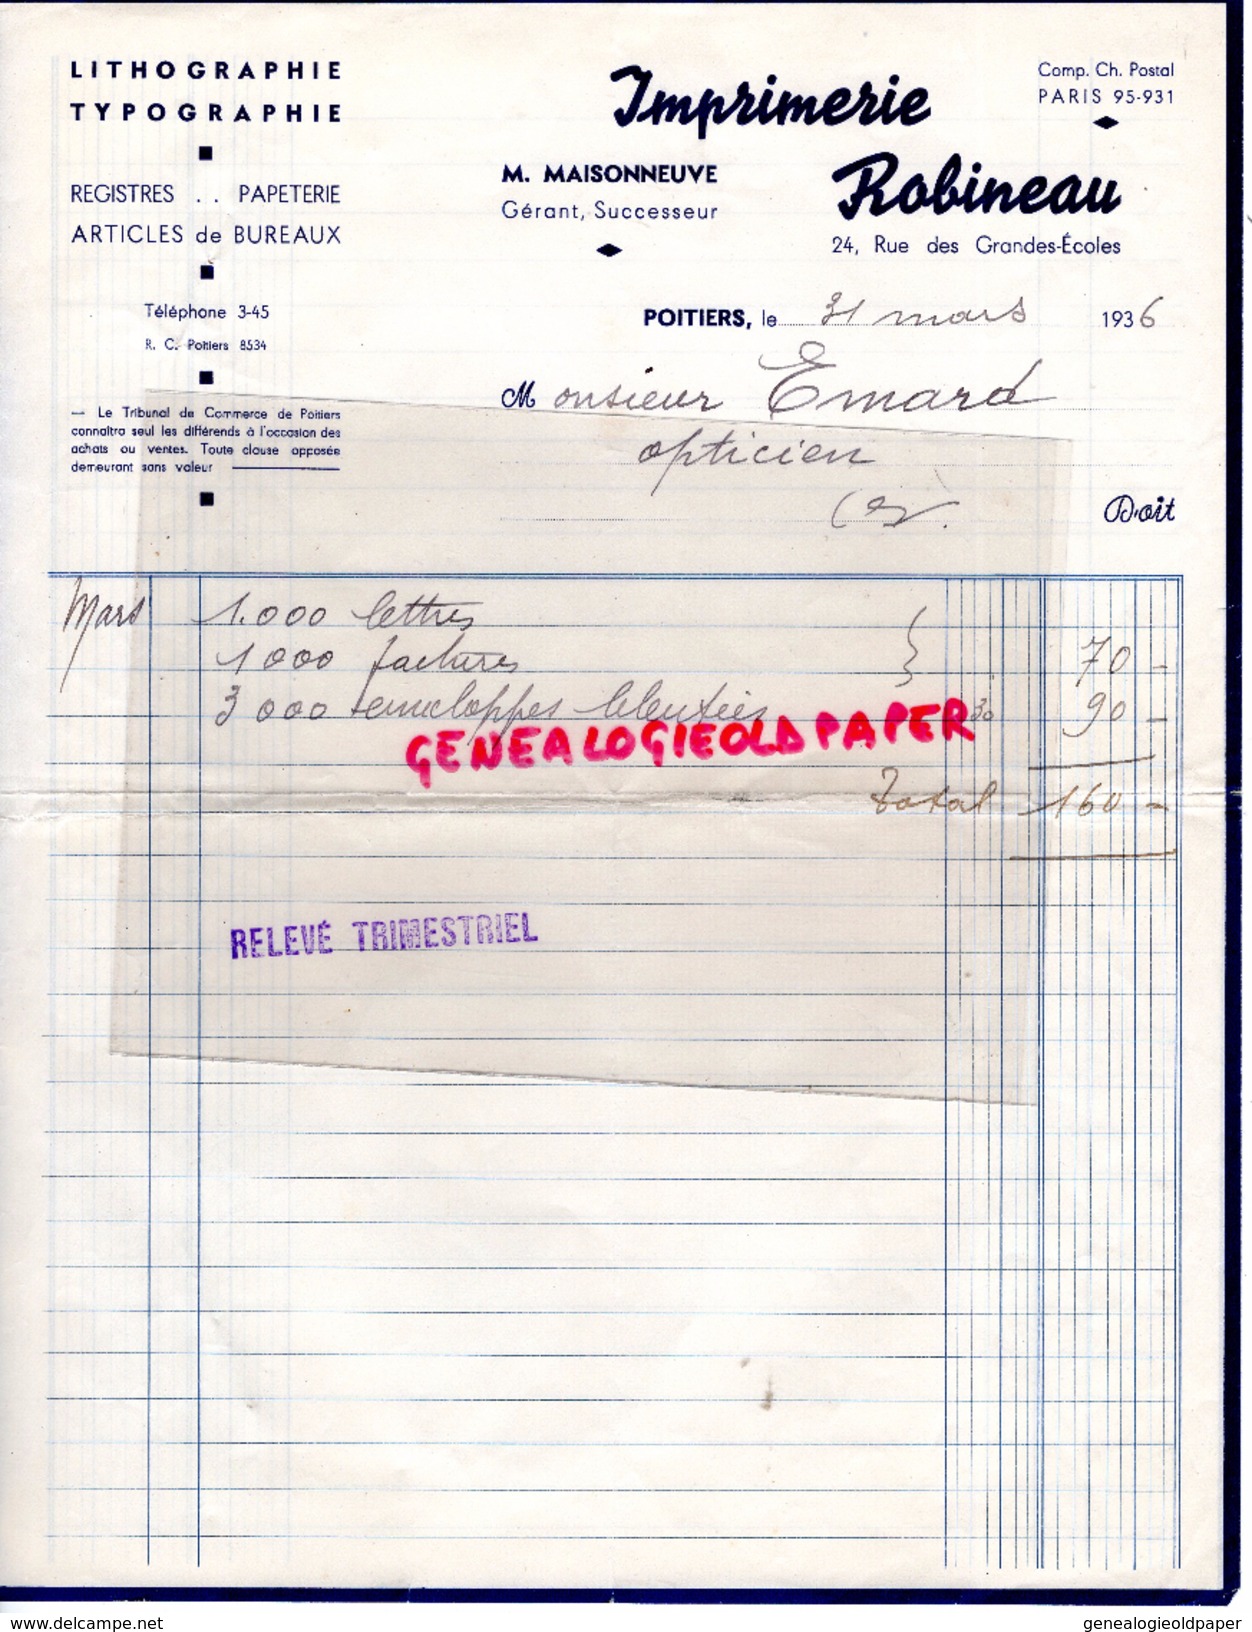 86 - POITIERS - FACTURE IMPRIMERIE ROBINEAU- M. MAISONNEUVE- 24 RUE GRANDES ECOLES- LITHOGRAPHIE TYPOGRAPHIE-1936 - Imprimerie & Papeterie